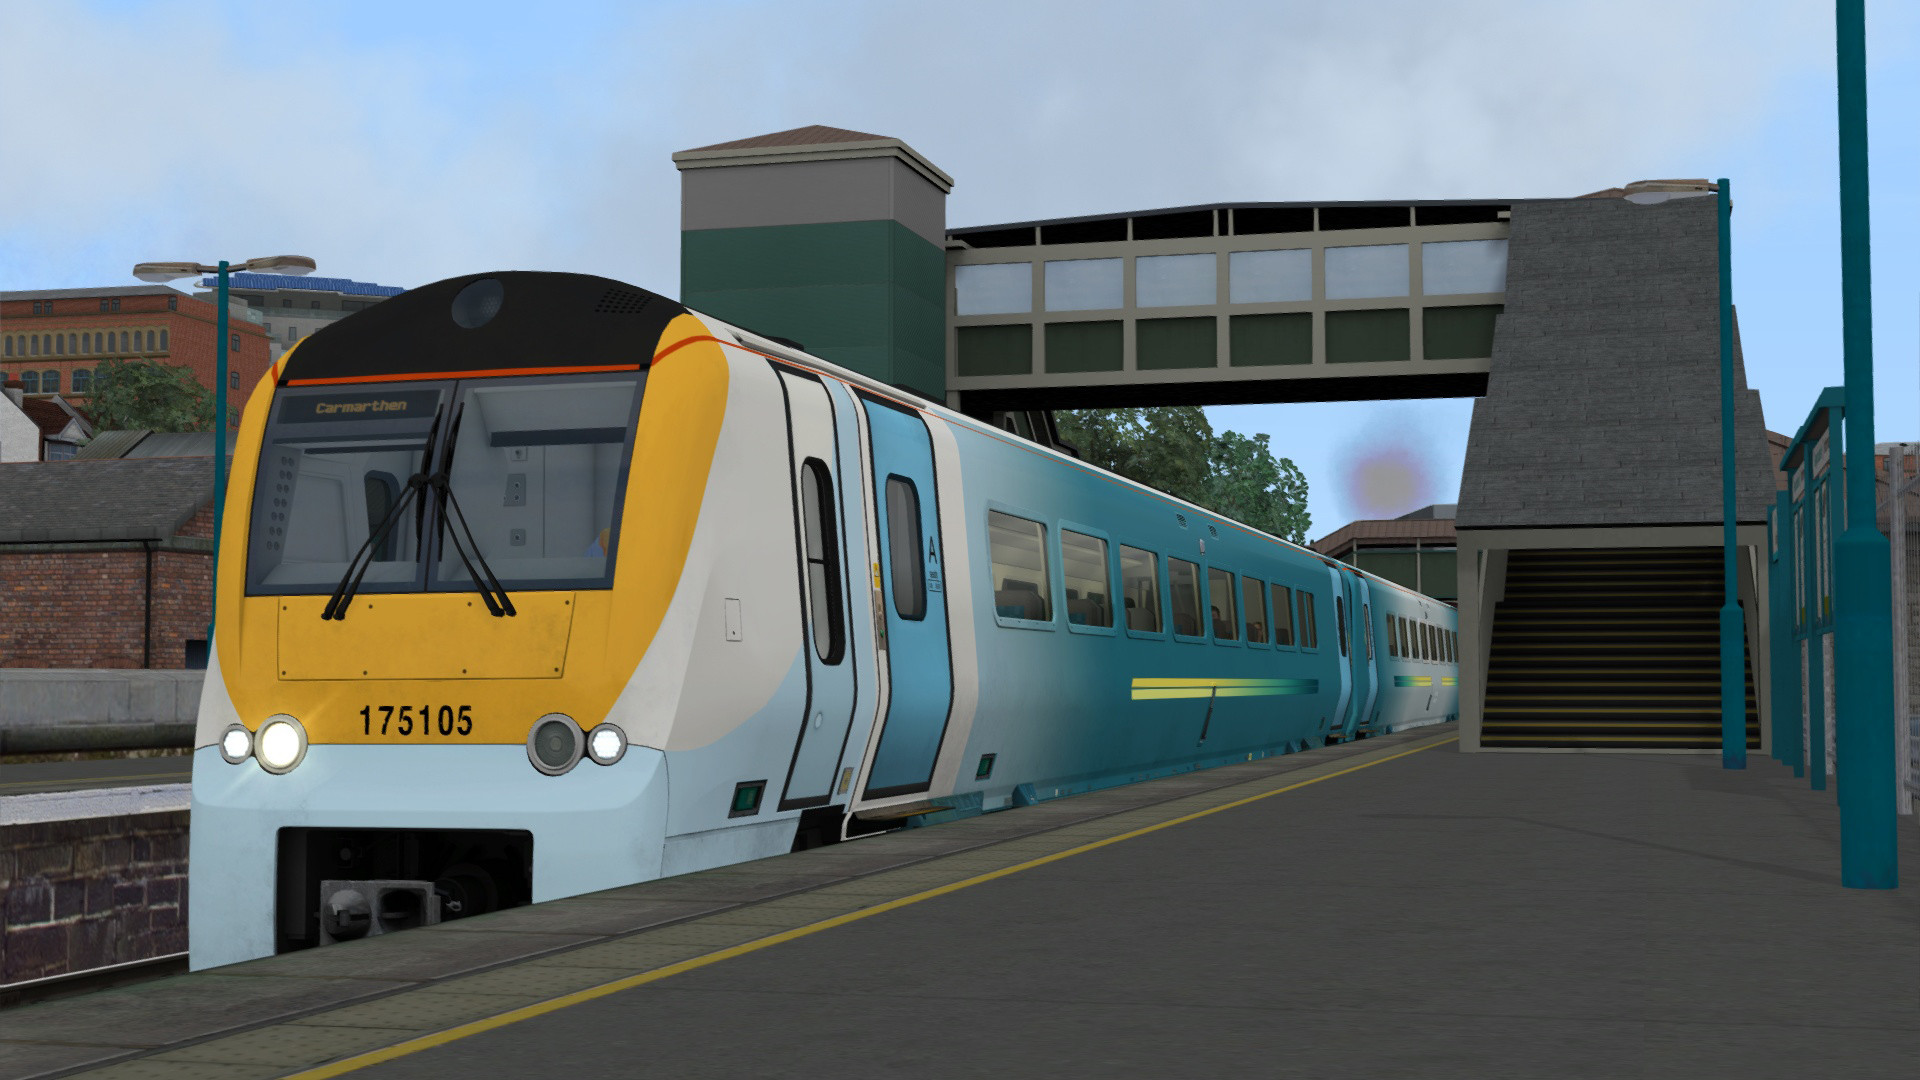 Train Simulator - South Wales Coastal: Bristol - Swansea Route Add-on DLC Steam CD Key, $4.17